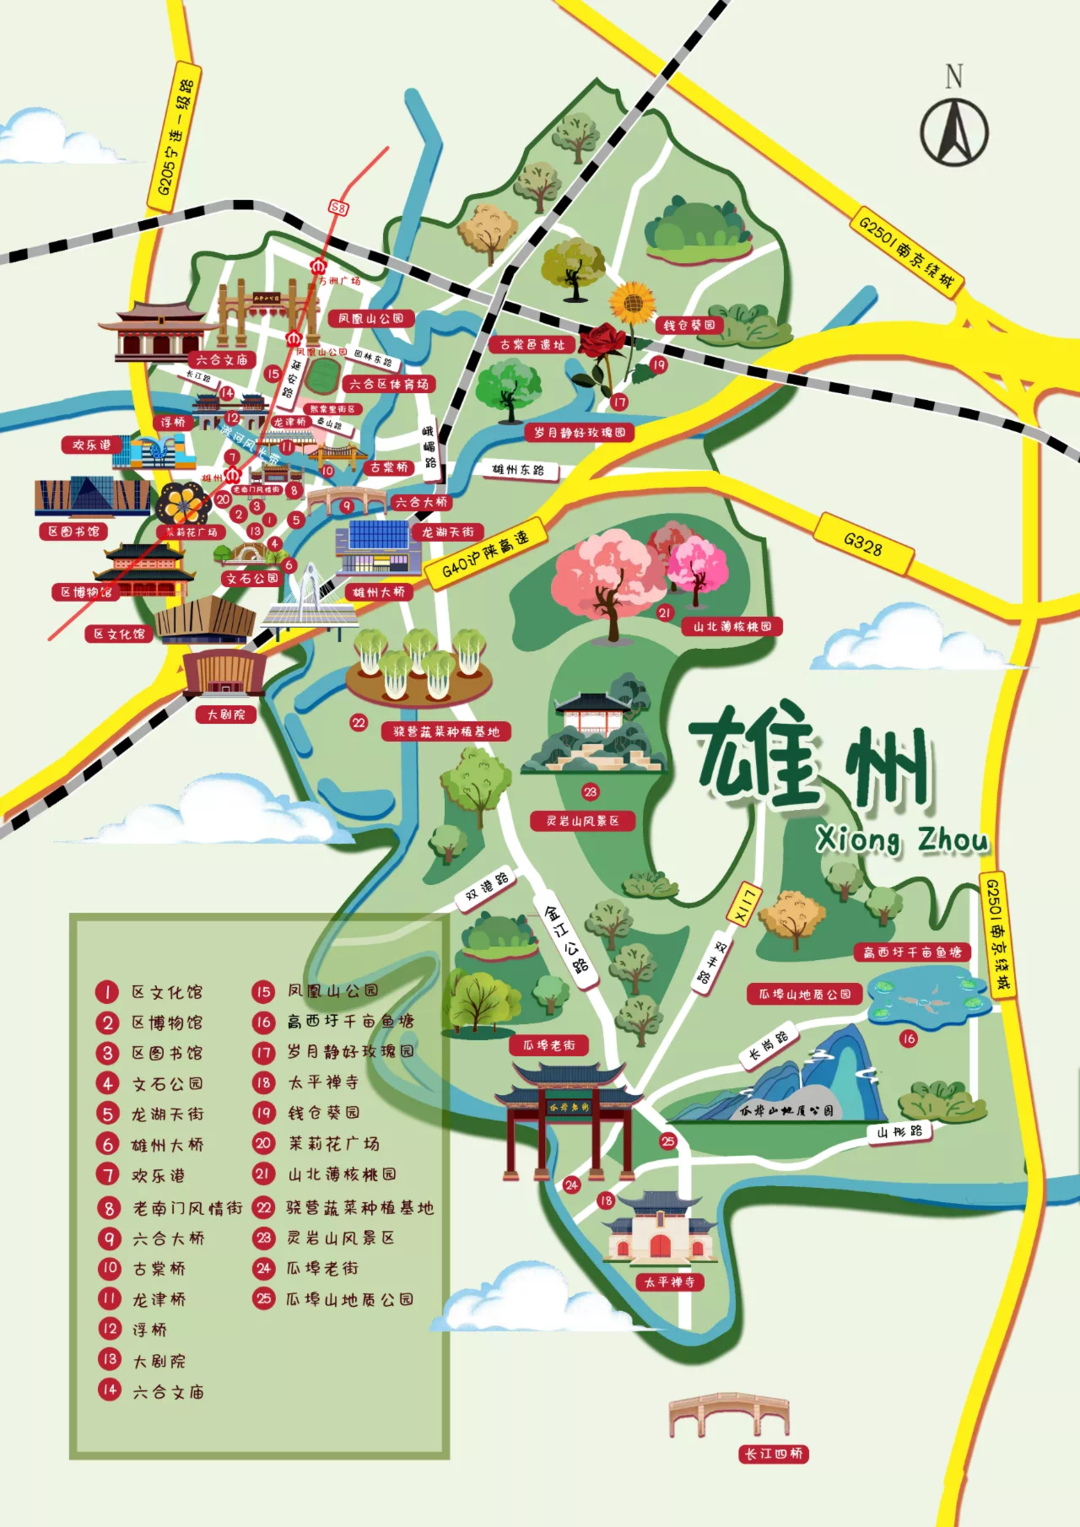 雄县县城地图图片